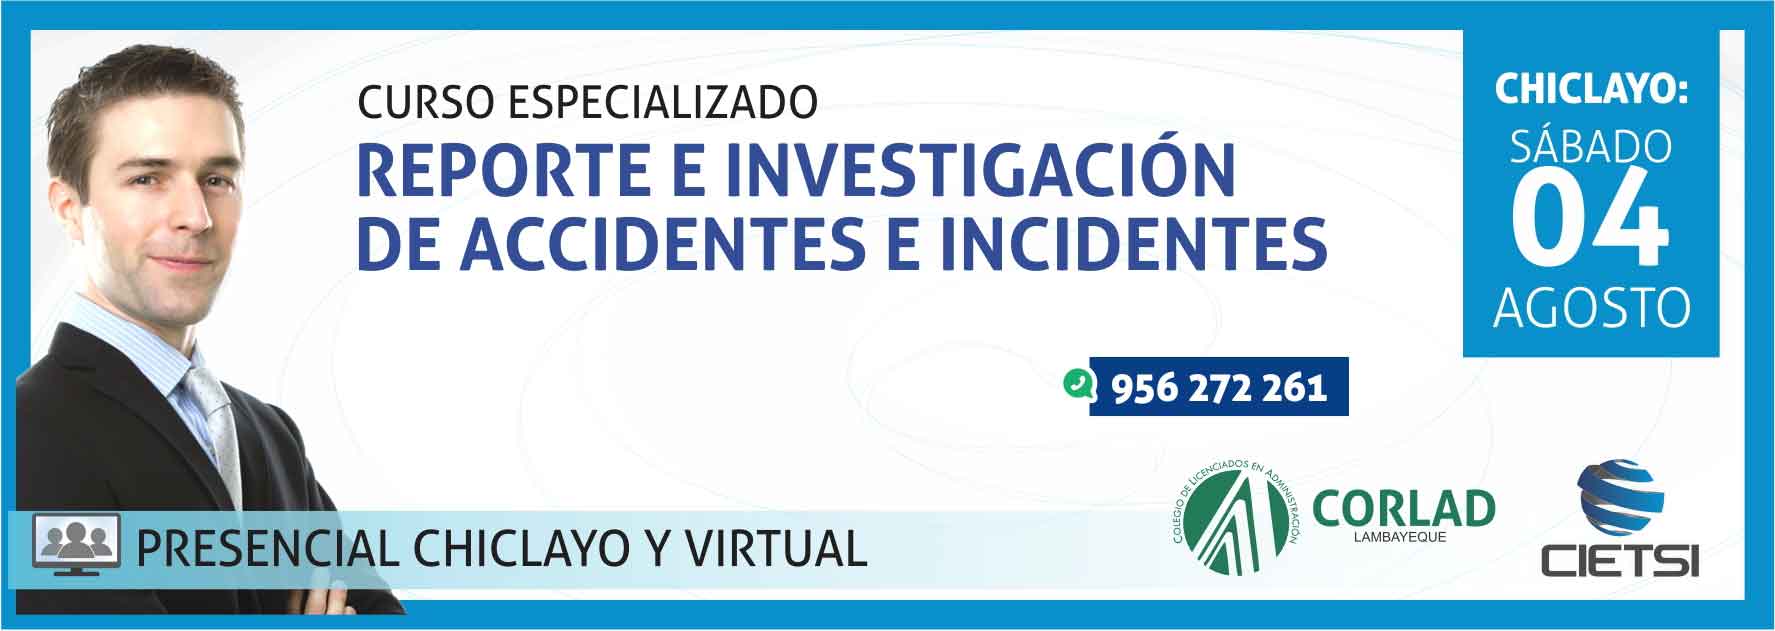 CURSO ESPECIALIZADO REPORTE E INVESTIGACIÓN DE ACCIDENTES E INCIDENTES 2018